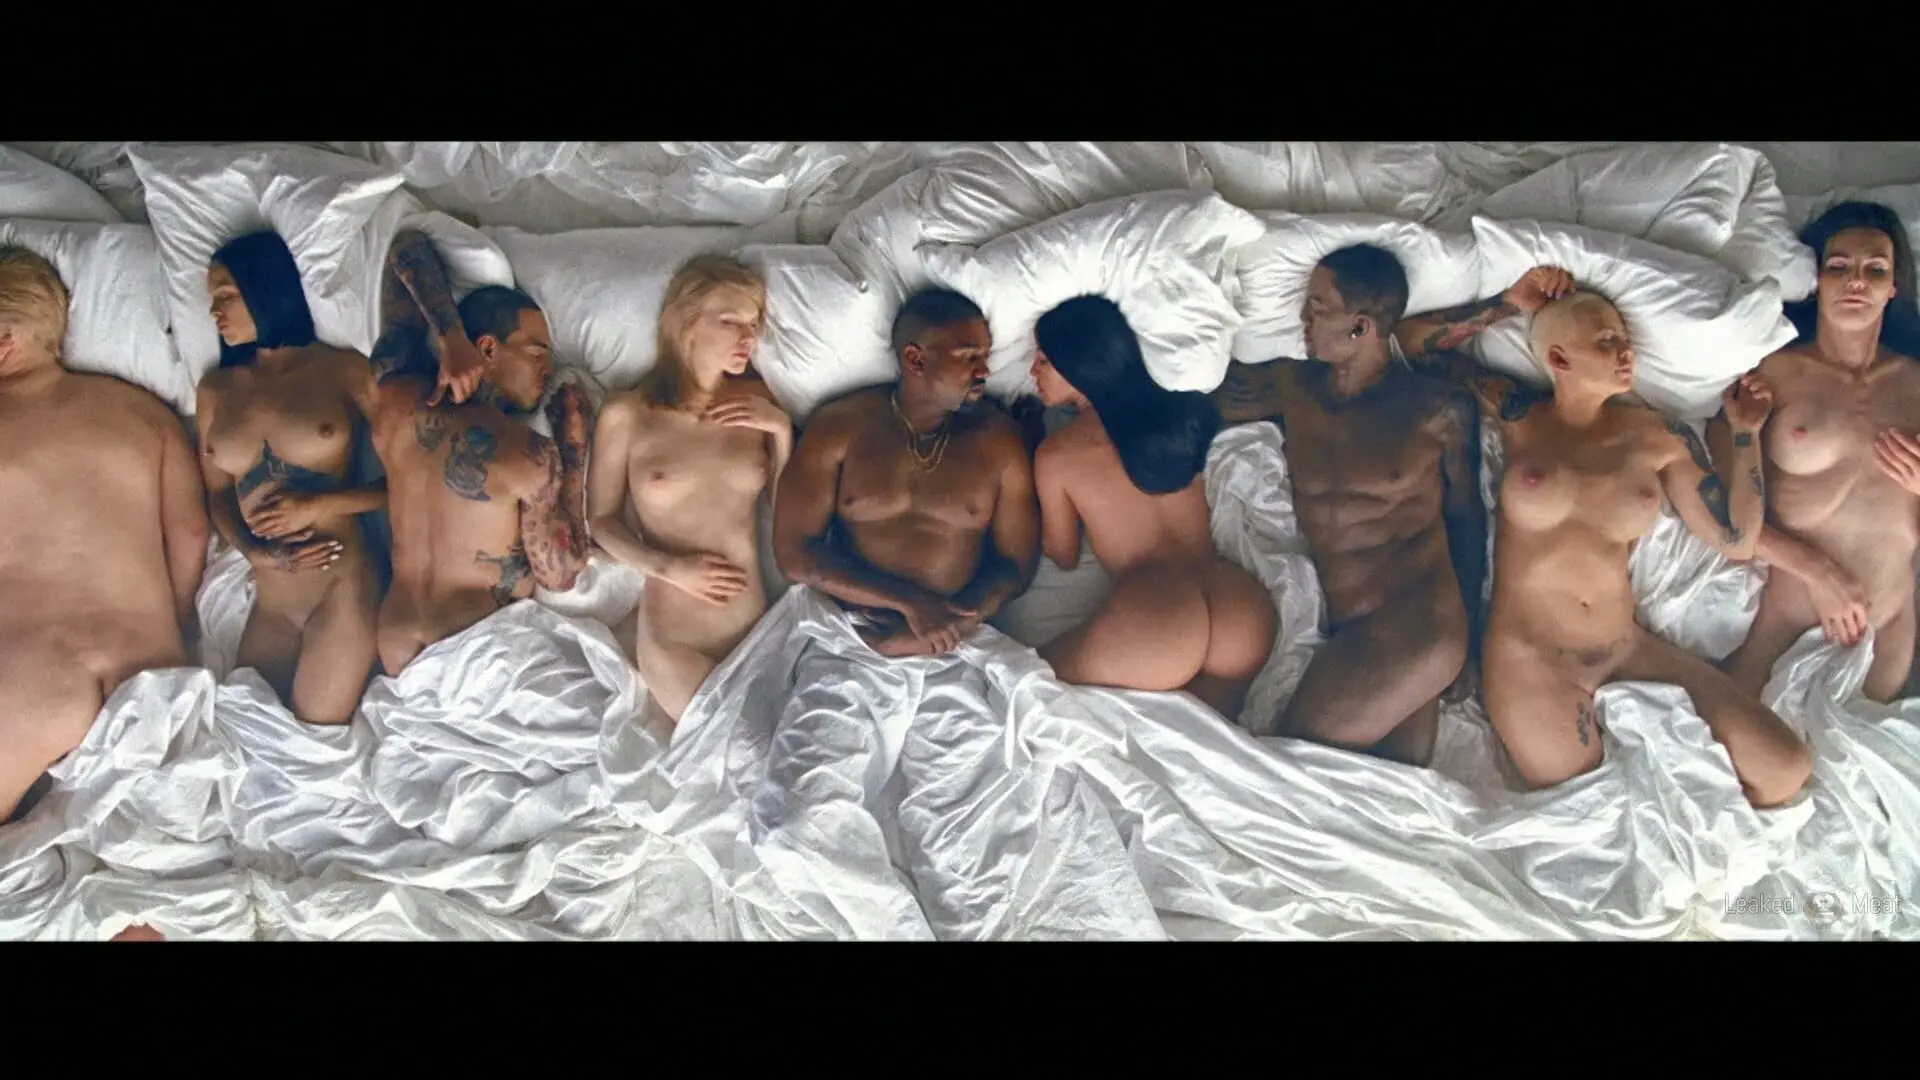 Nude Kanye West Pics.